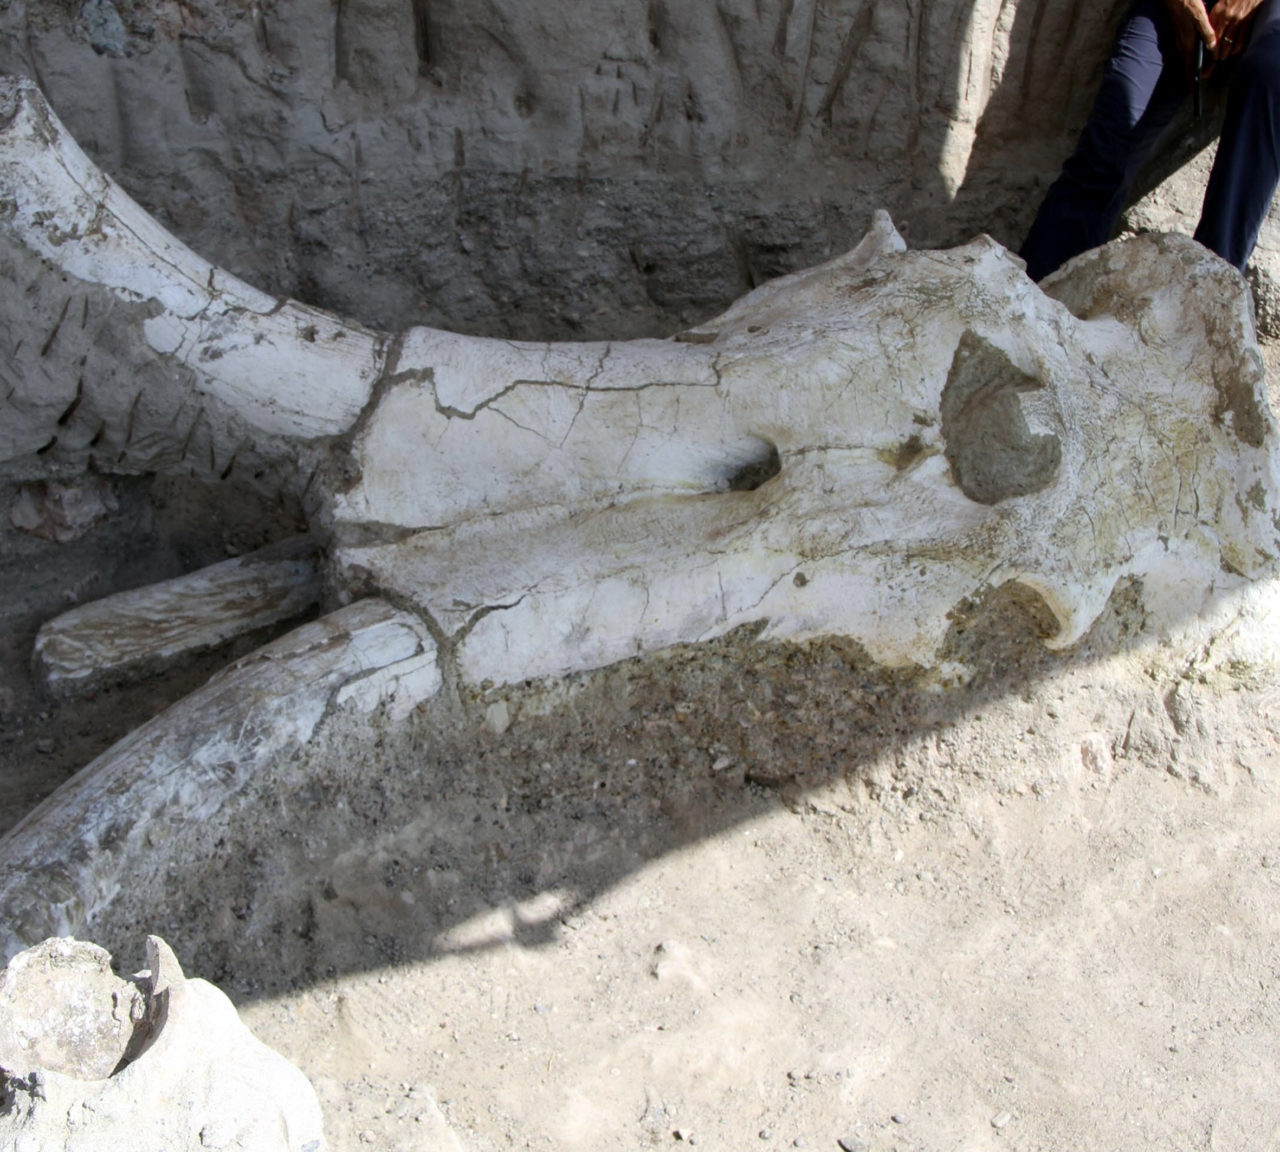 Kayseri’deki kazı çalışmalarında bulunan 7.5 milyon yaşındaki fil fosili 2 metre 70 santim boyunda.